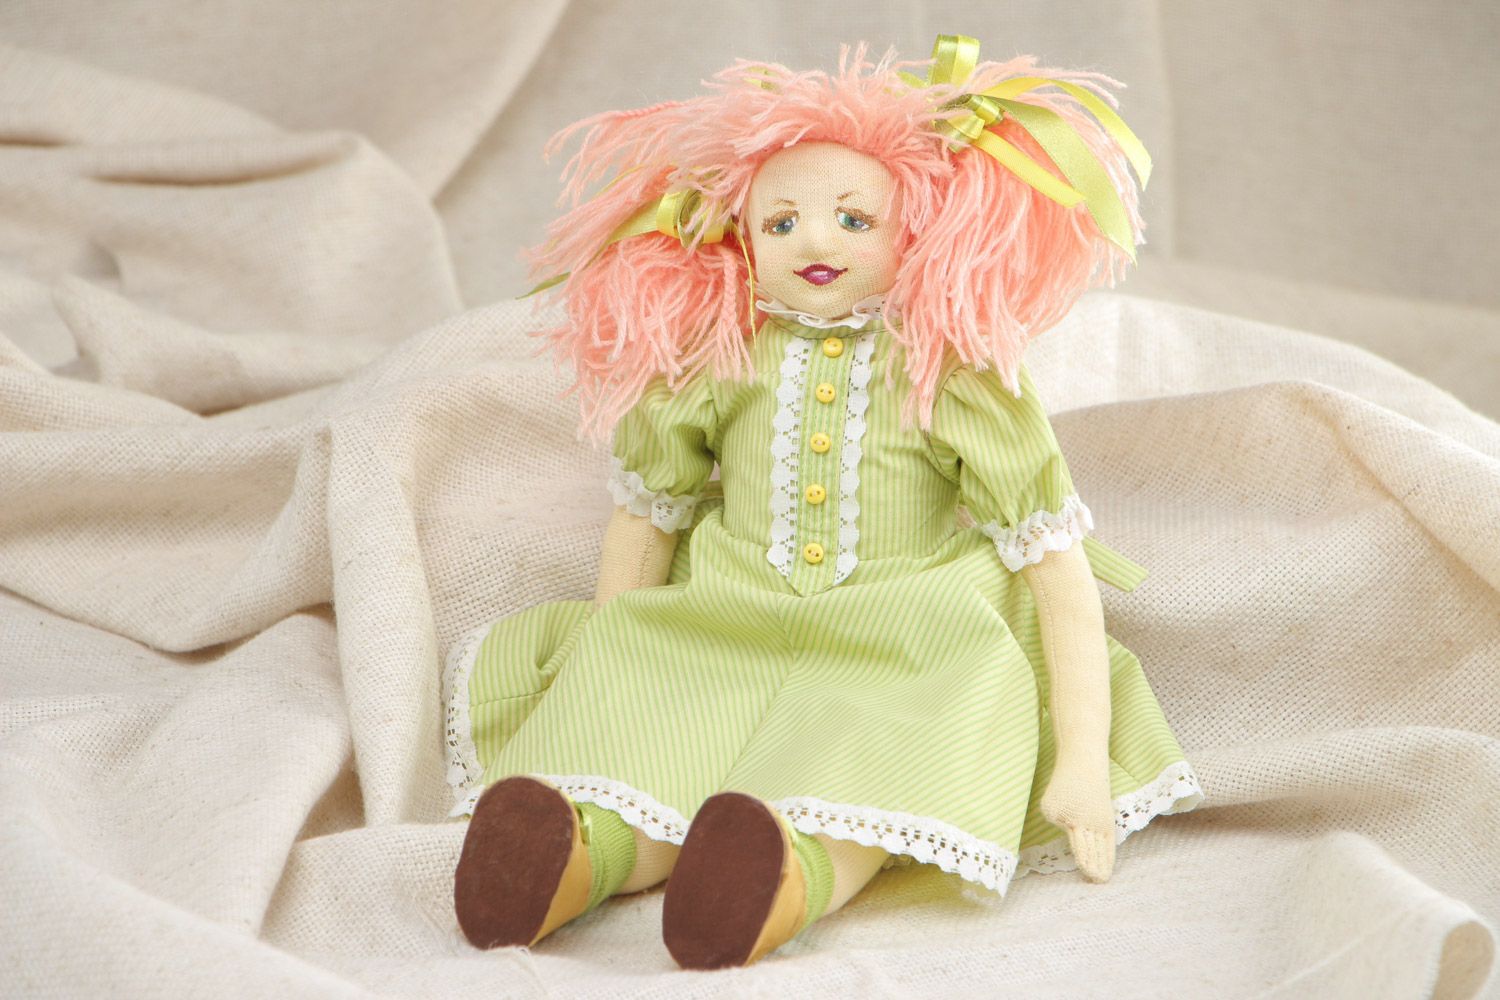 Авторская кукла игровая в зеленом платье из ткани ручной работы среднего размера фото 1